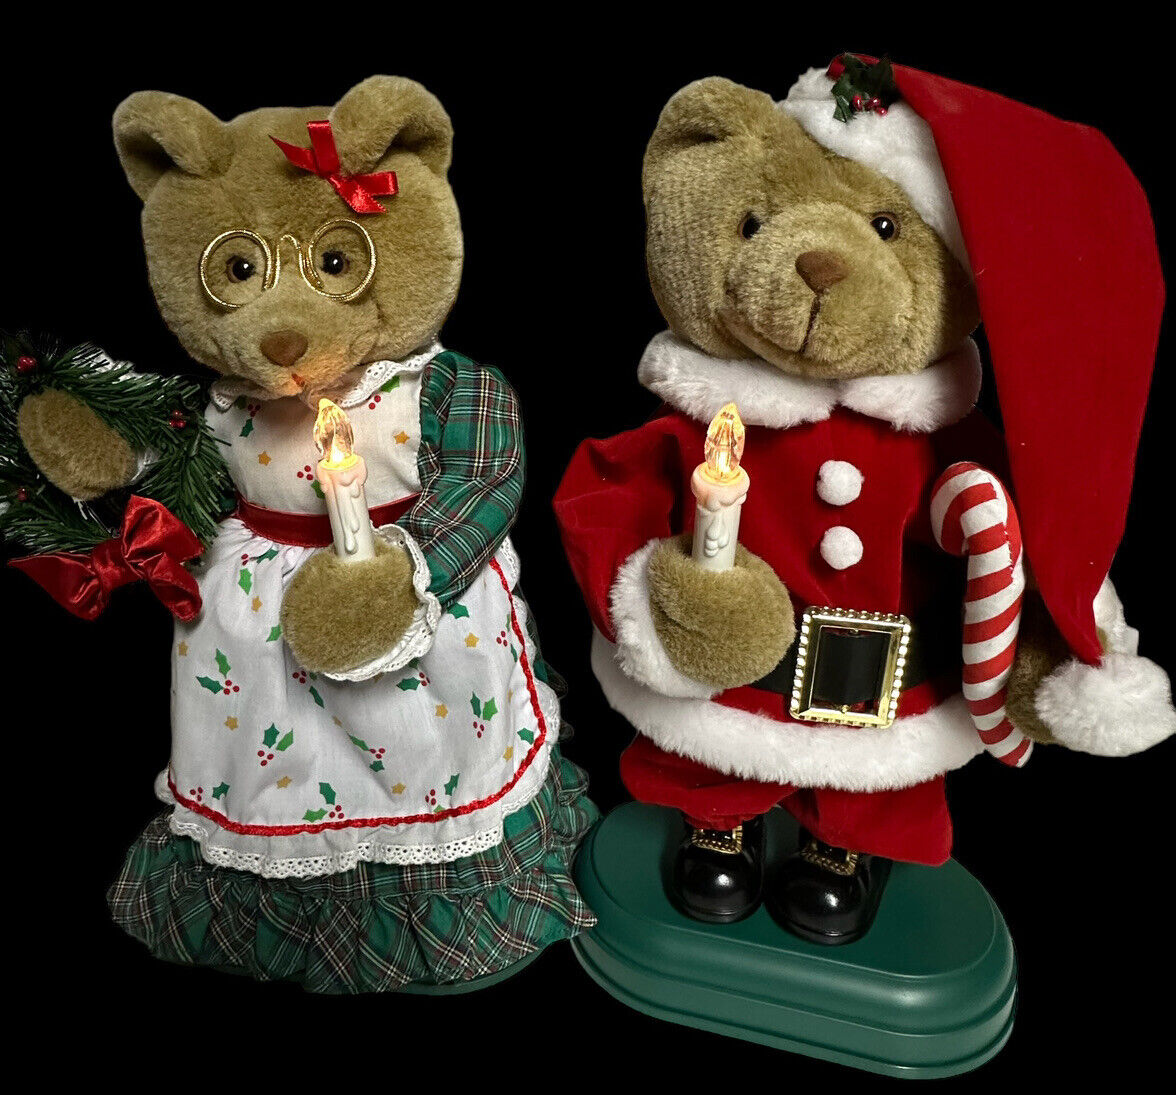 Santa Claus and Mrs Santa Claus Musical Runs On 2 C Batteries No Cord